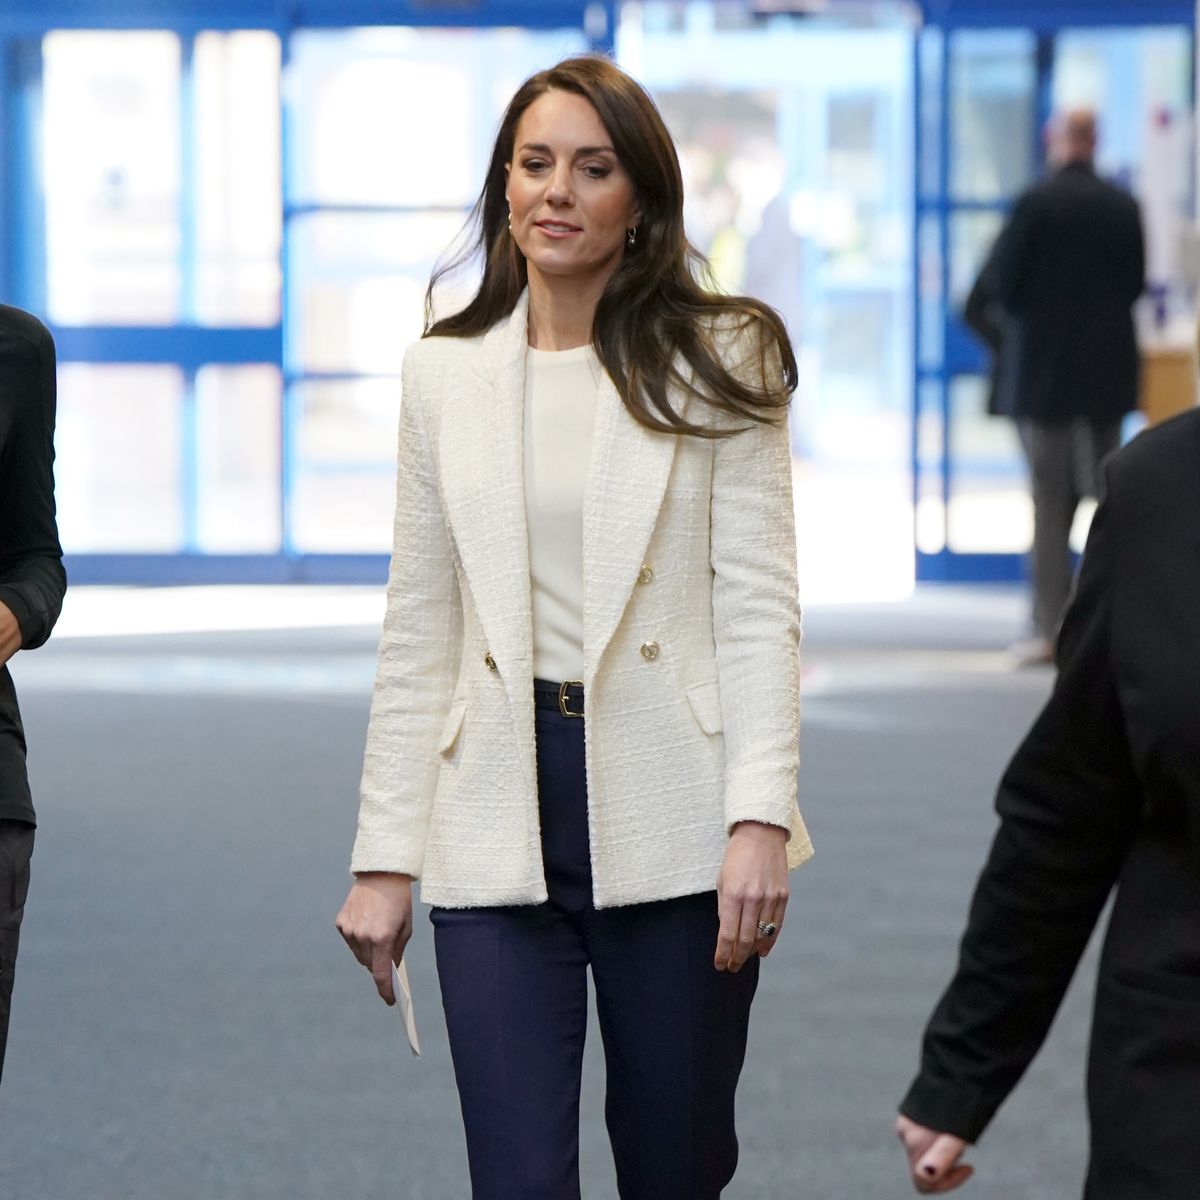 Kate Middleton wears a $90 Zara blazer to meet families in Windsor